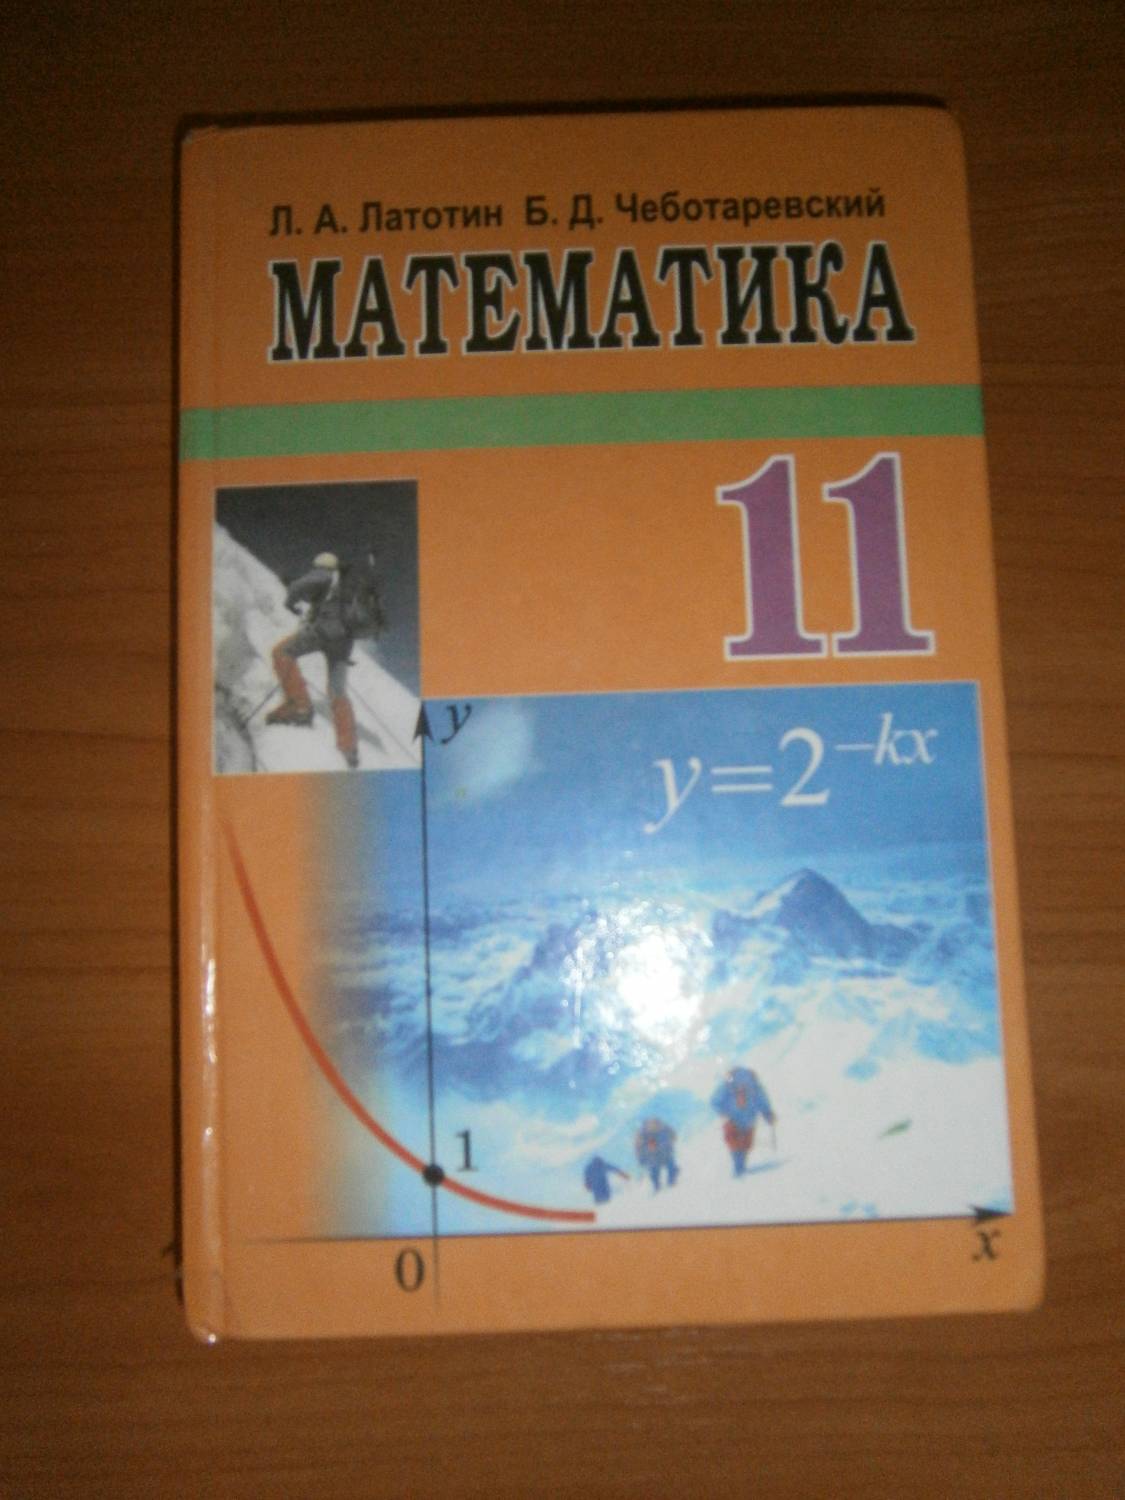 Решебник по математике 8 класс латотин чеботаревский